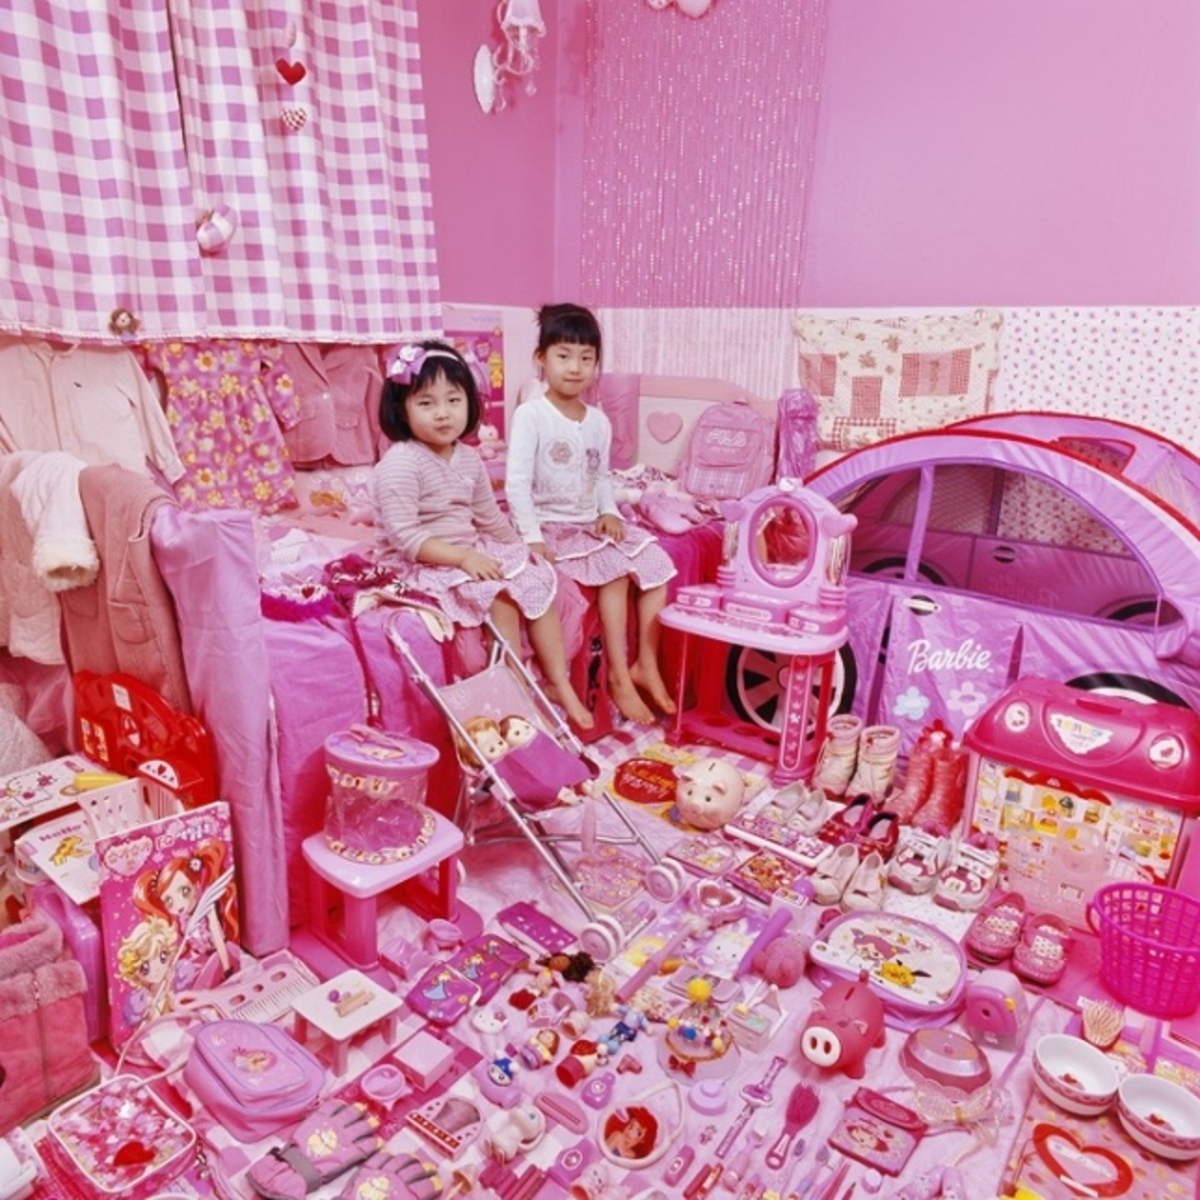 Игра розовая девочка синий мальчик. Интересные игрушки для девочек. Красивые штучки для девочек. Розовые вещи для детей. Много интересных игрушек для девочек.